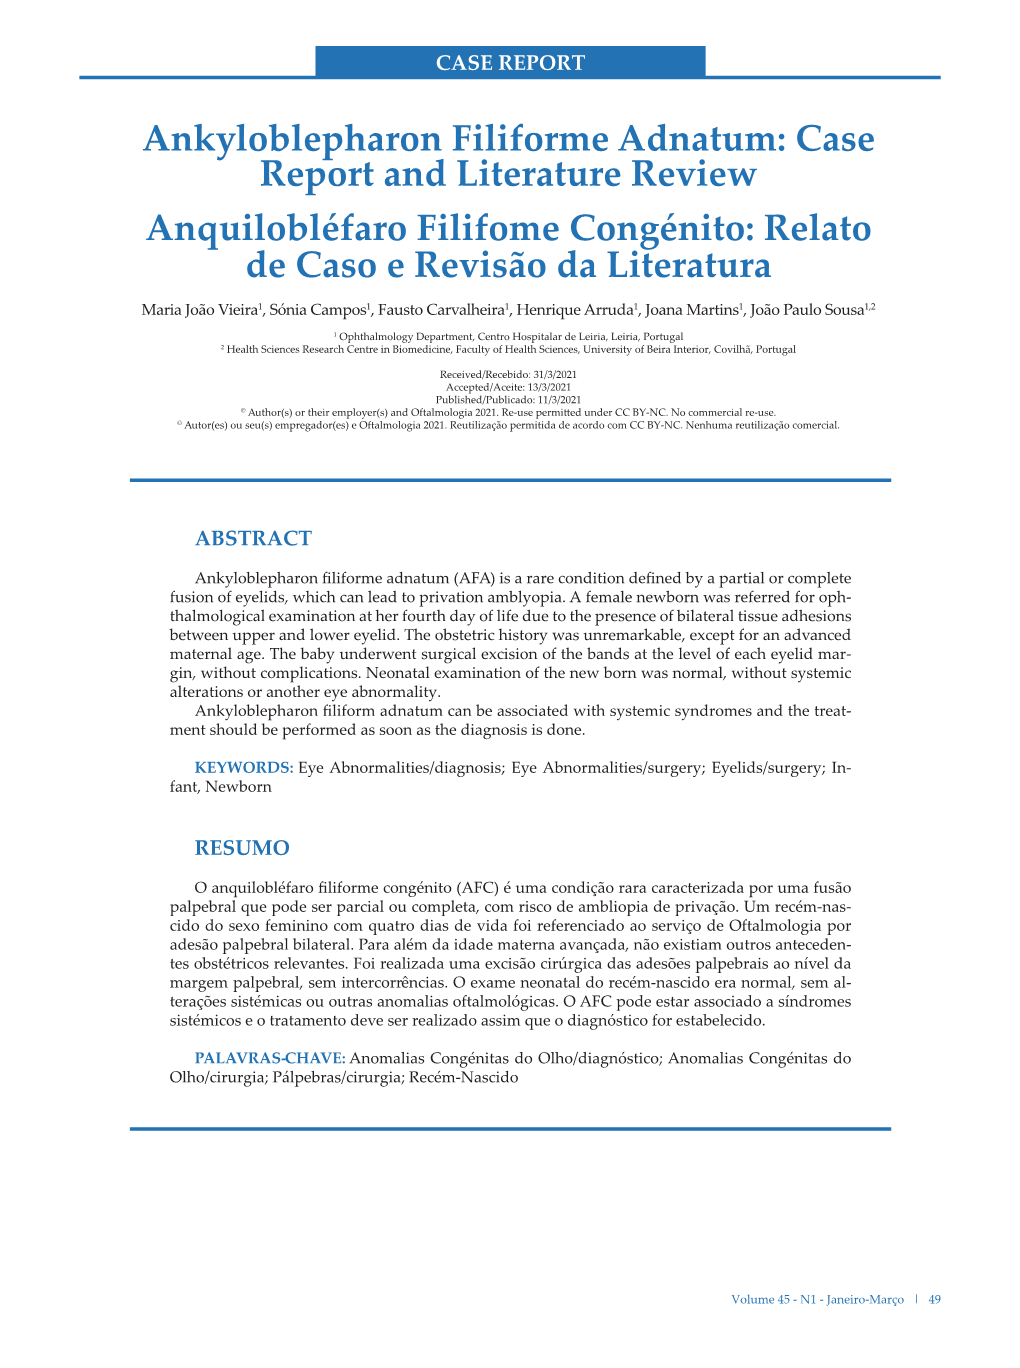 Ankyloblepharon Filiforme Adnatum: Case Report and Literature Review Anquilobléfaro Filifome Congénito: Relato De Caso E Revisão Da Literatura